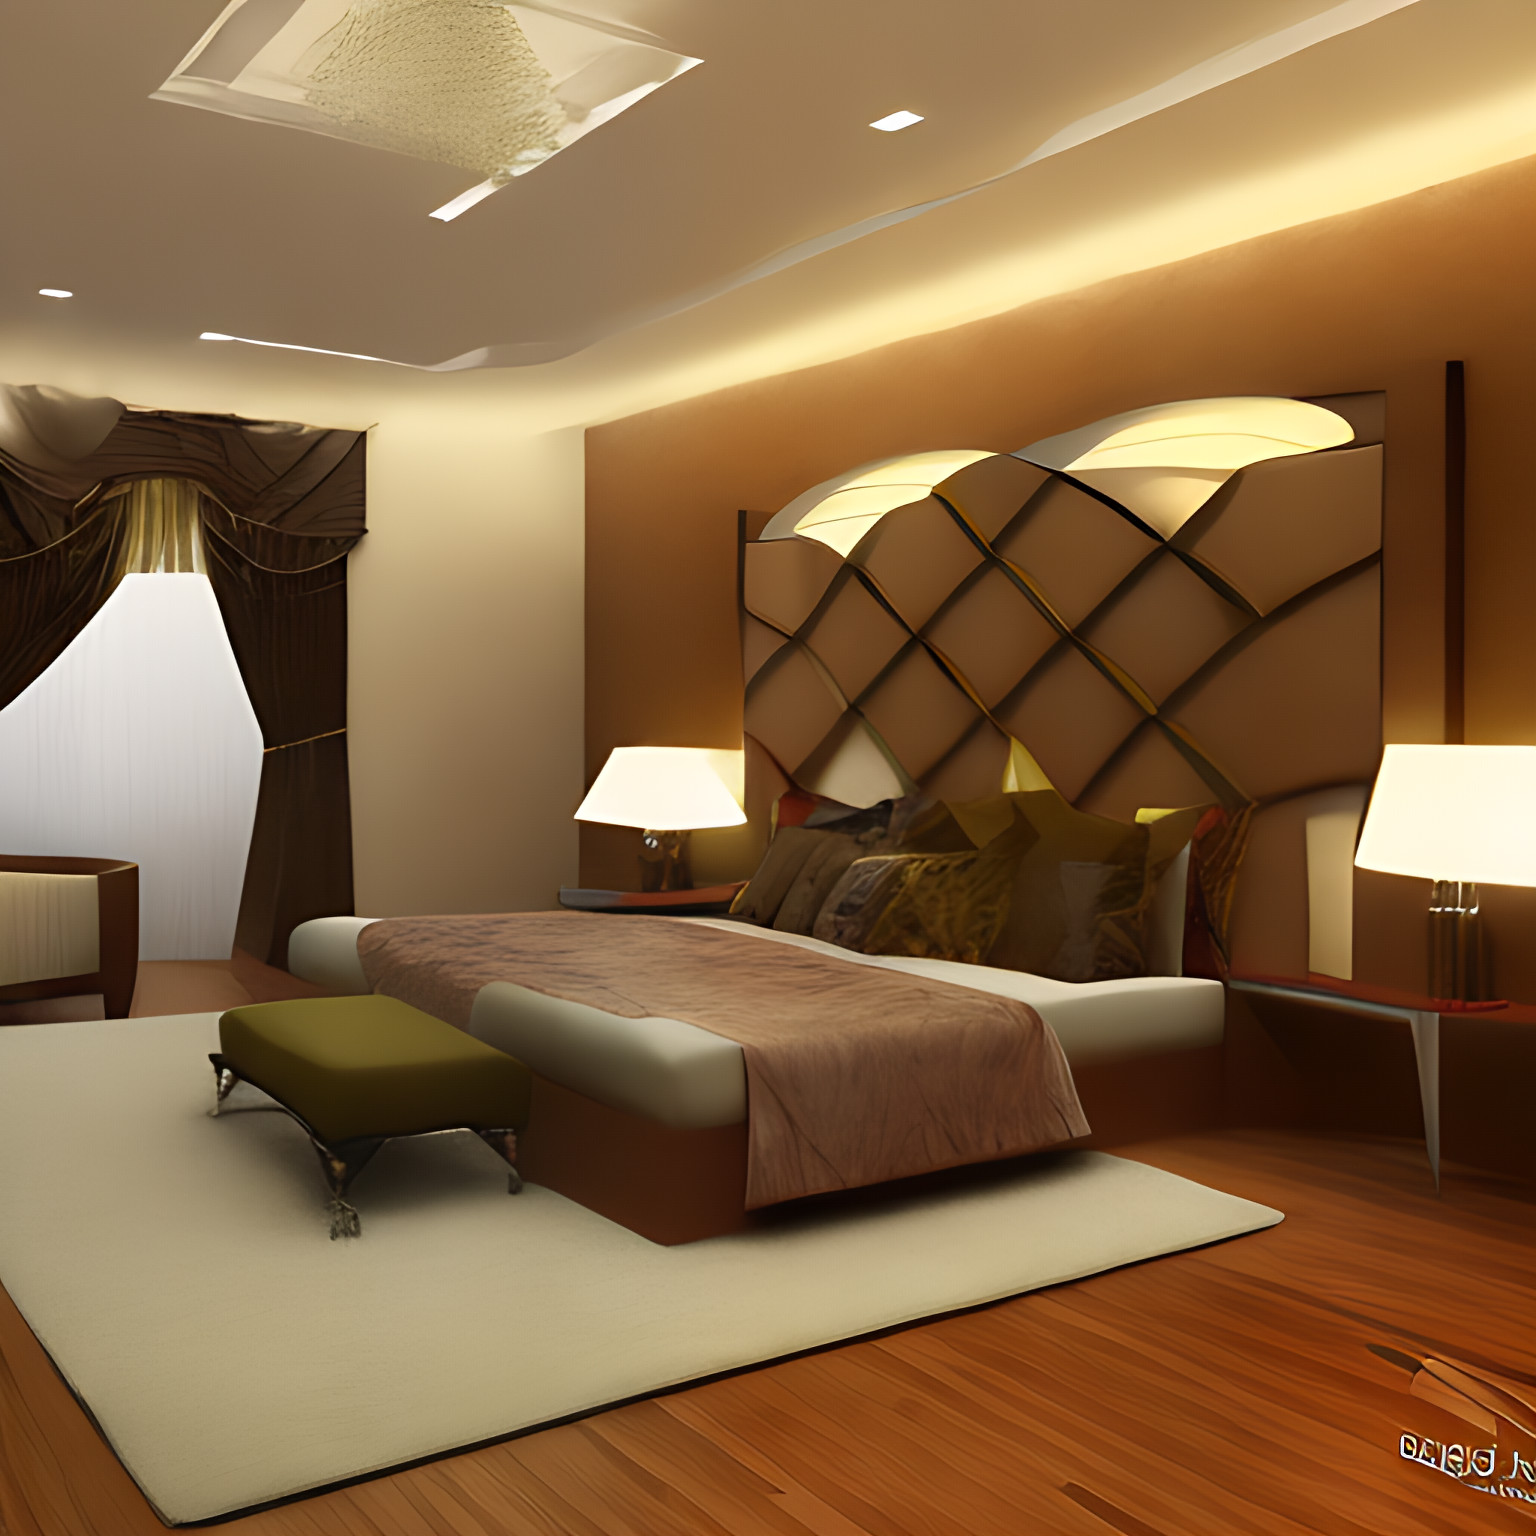 Contemporary Indian bedroom interior design